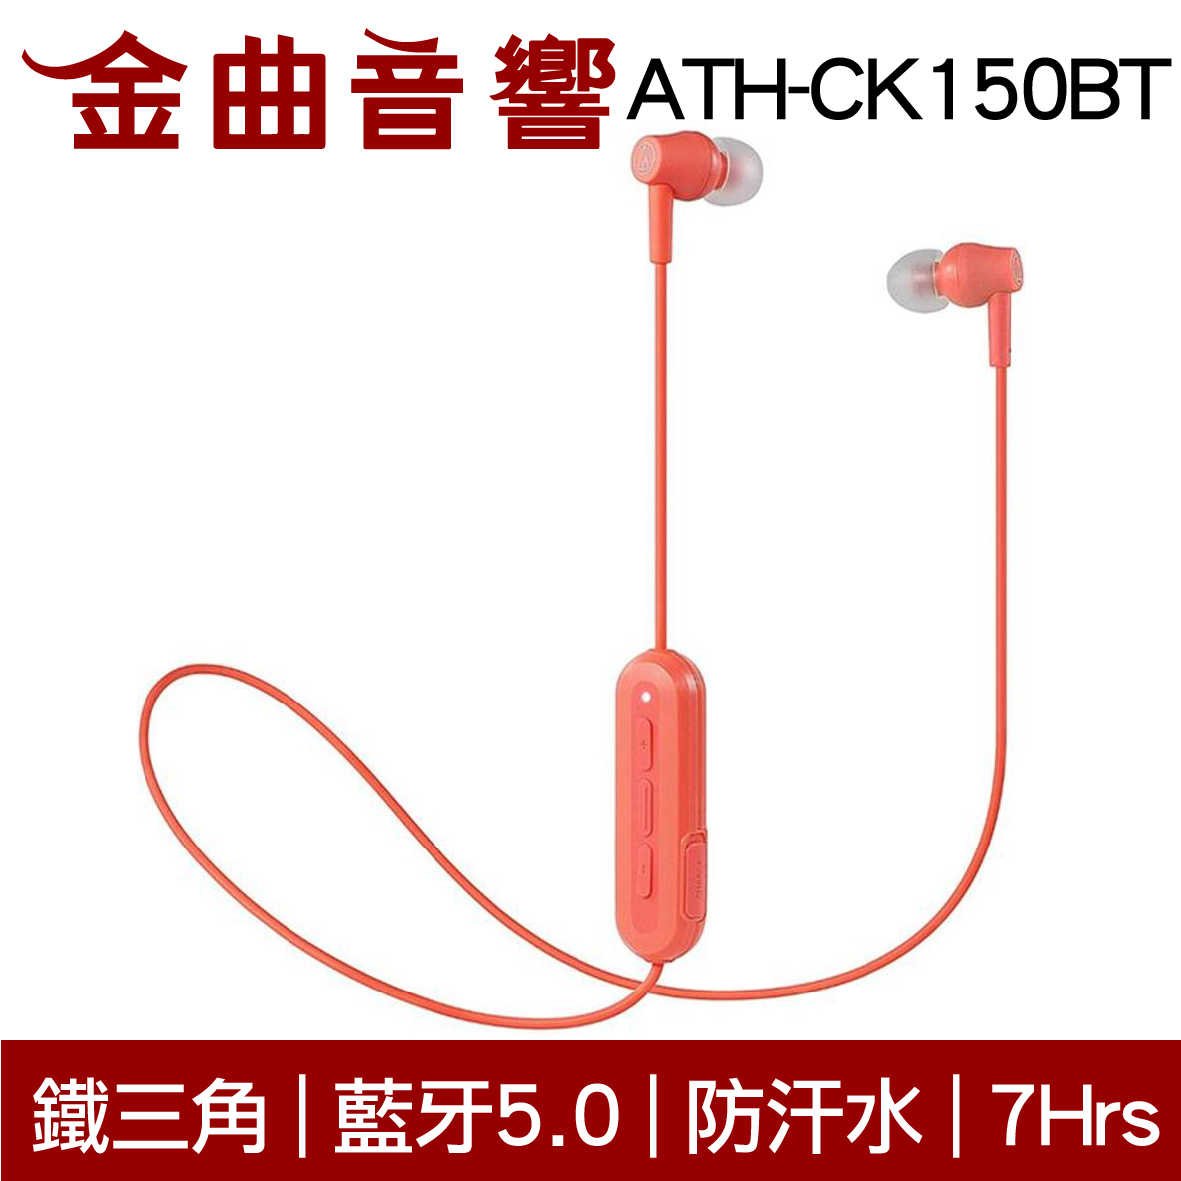 鐵三角 ATH-CK150BT 珊瑚色 可通話 無線 藍牙 耳道式耳機 | 金曲音響